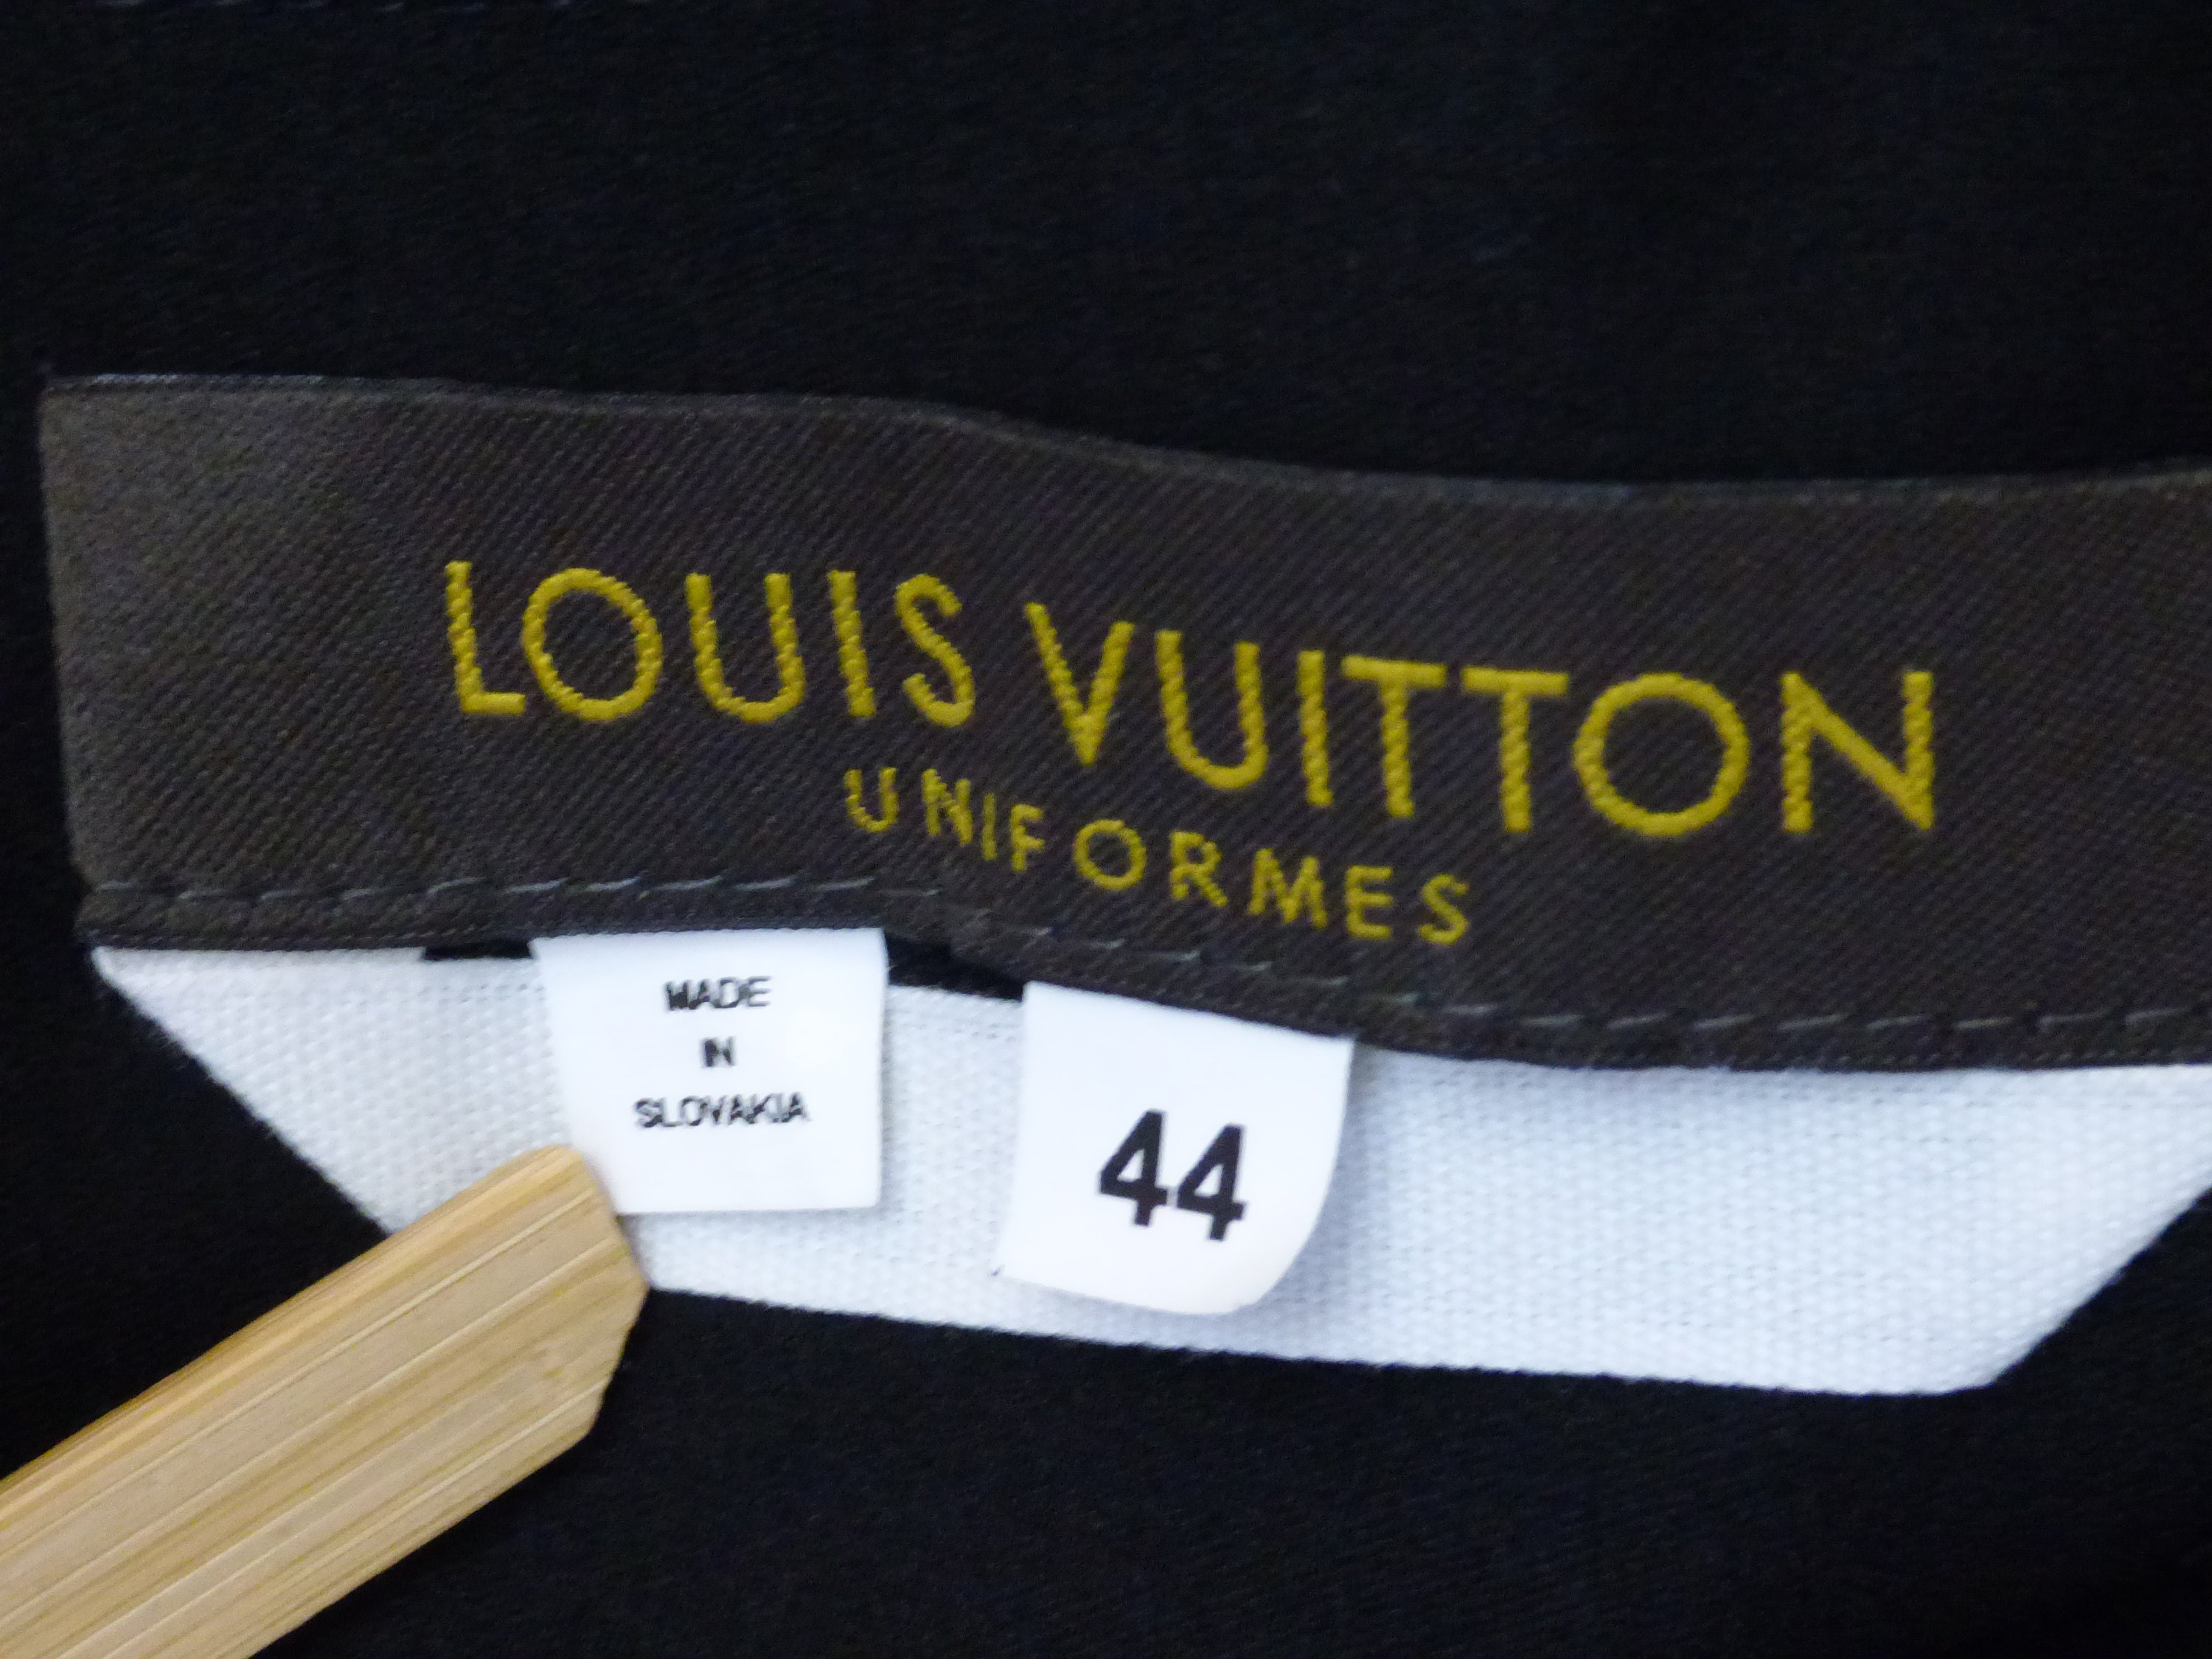 Authentic Louis Vuitton Uniformes Blouse -  Israel